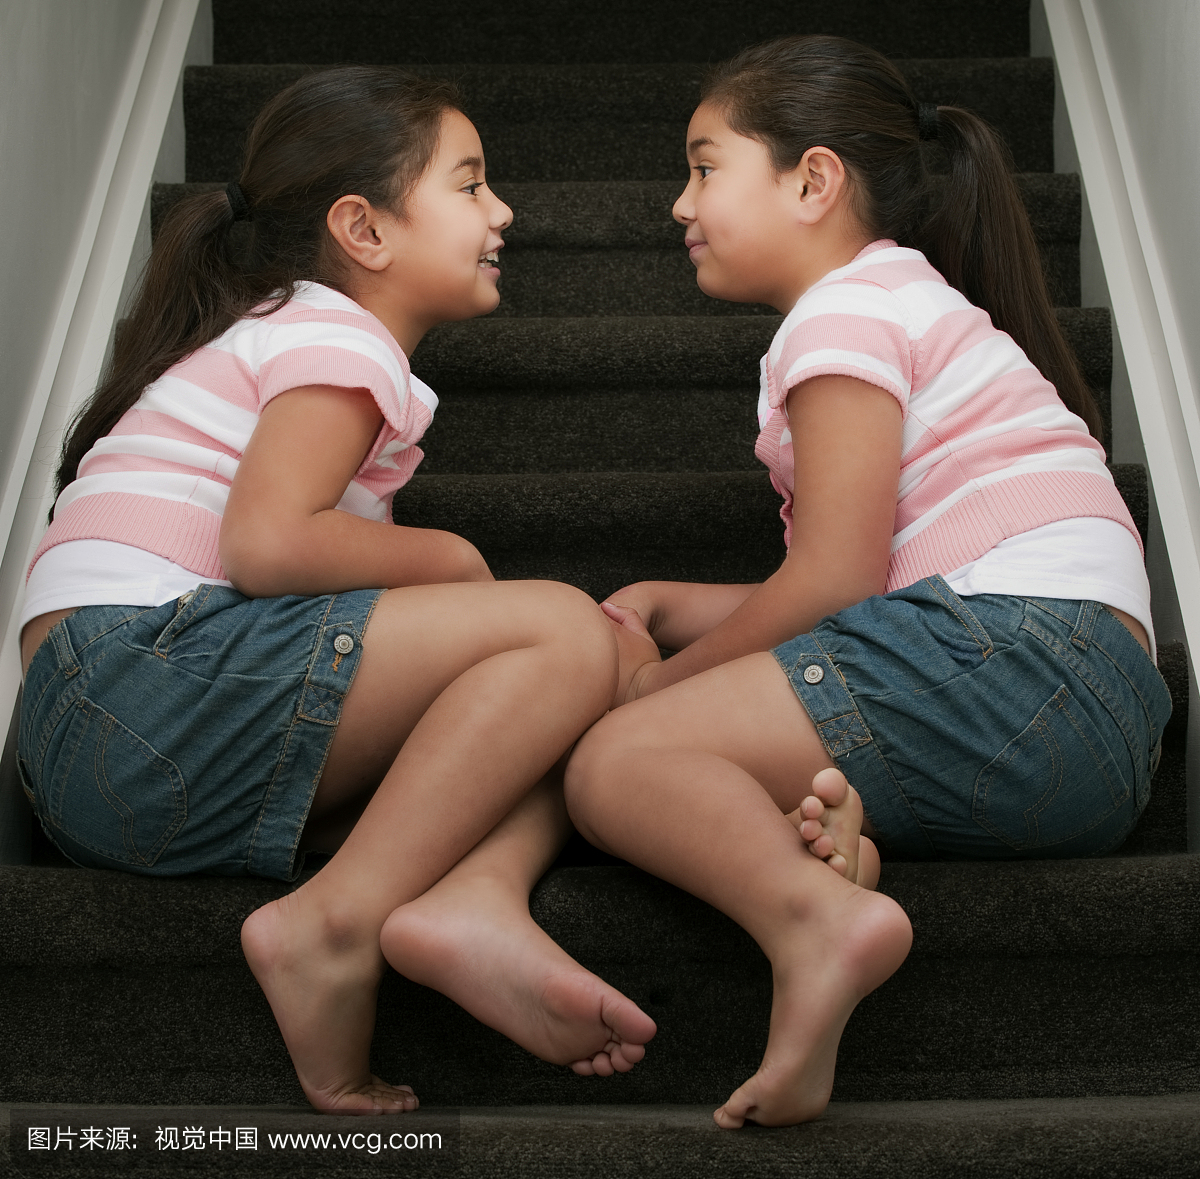 双胞胎姐妹坐在楼梯上,说话。